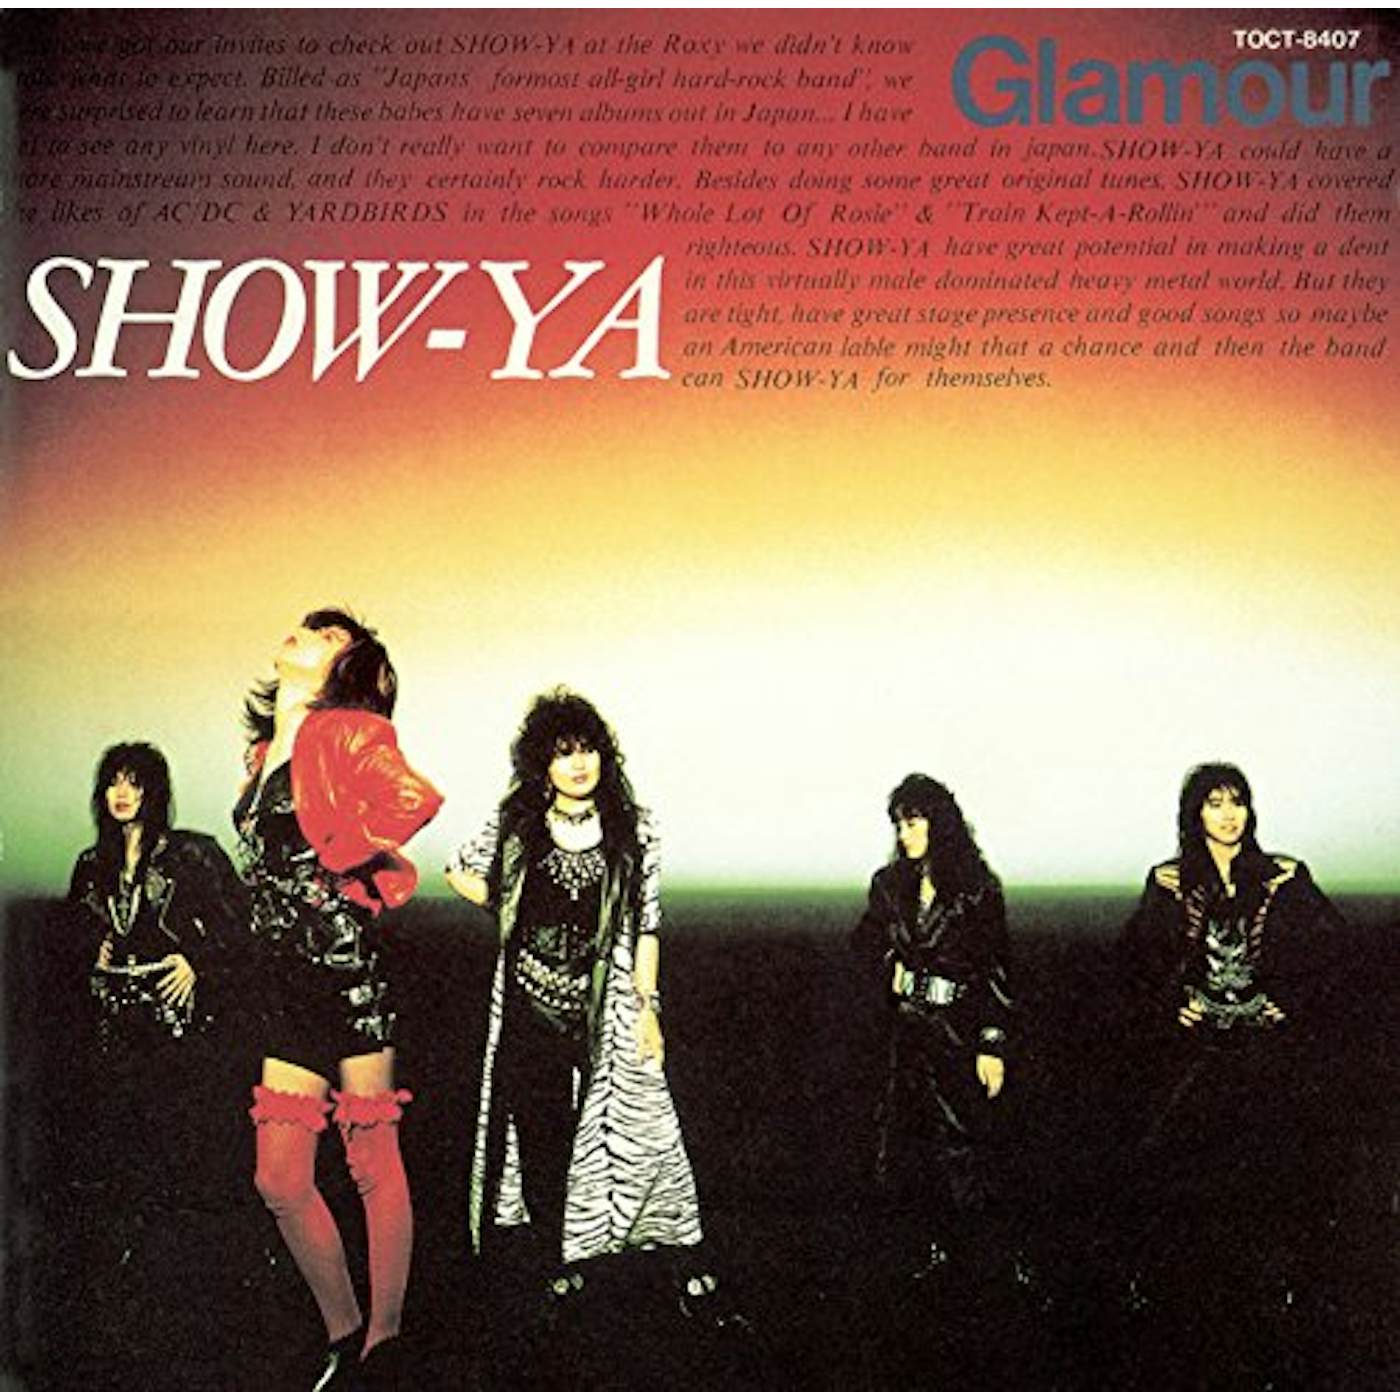 SHOW-YA GLAMOUR + 2 CD